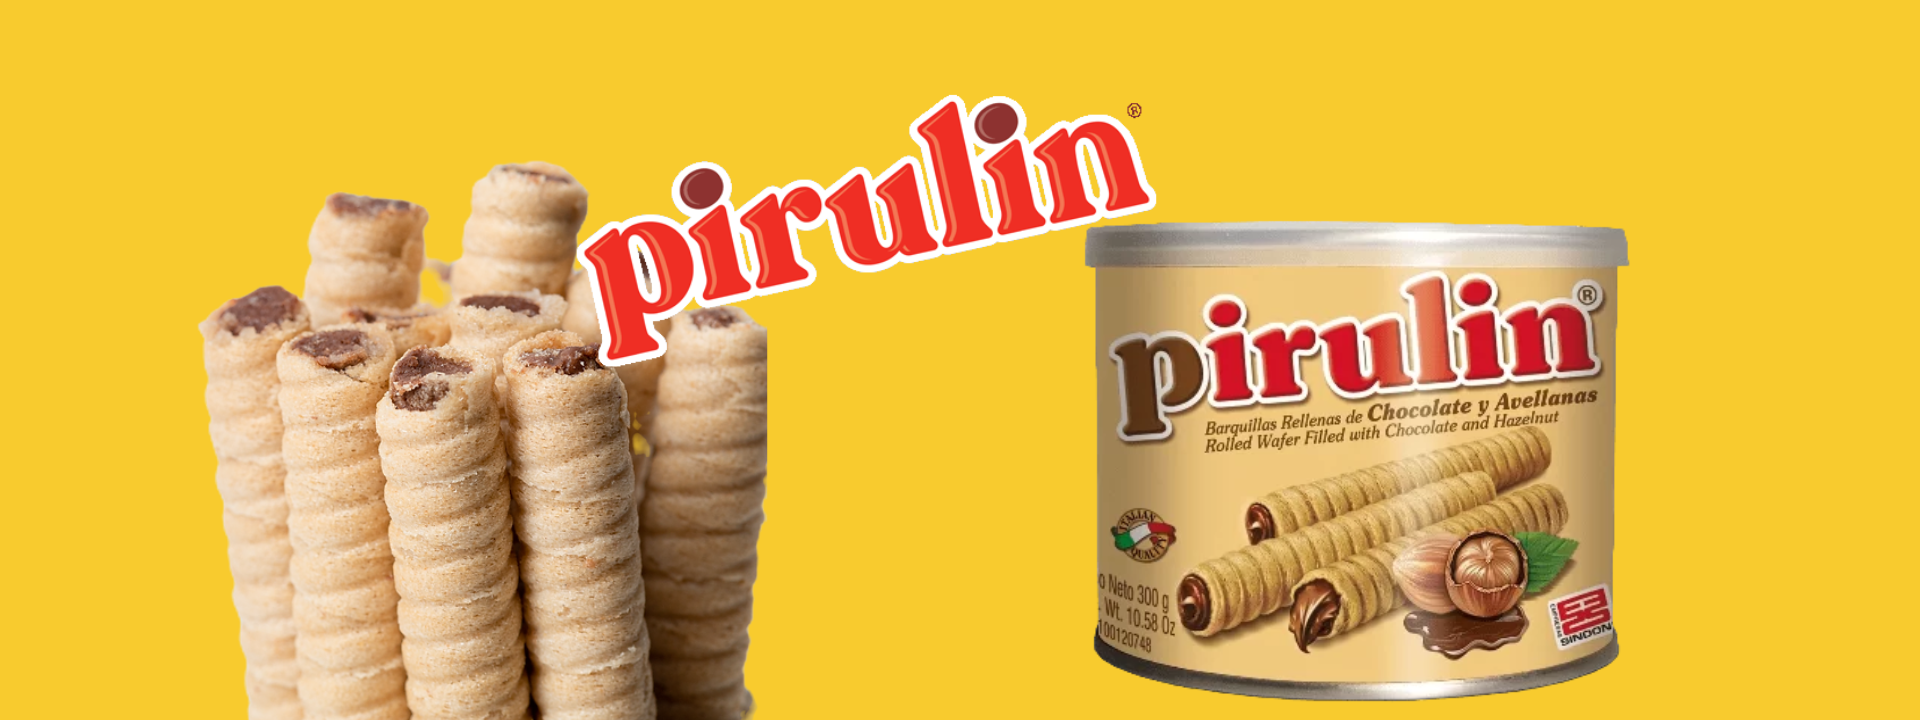 Pirulin - Barquillo de chocolate y avellanas